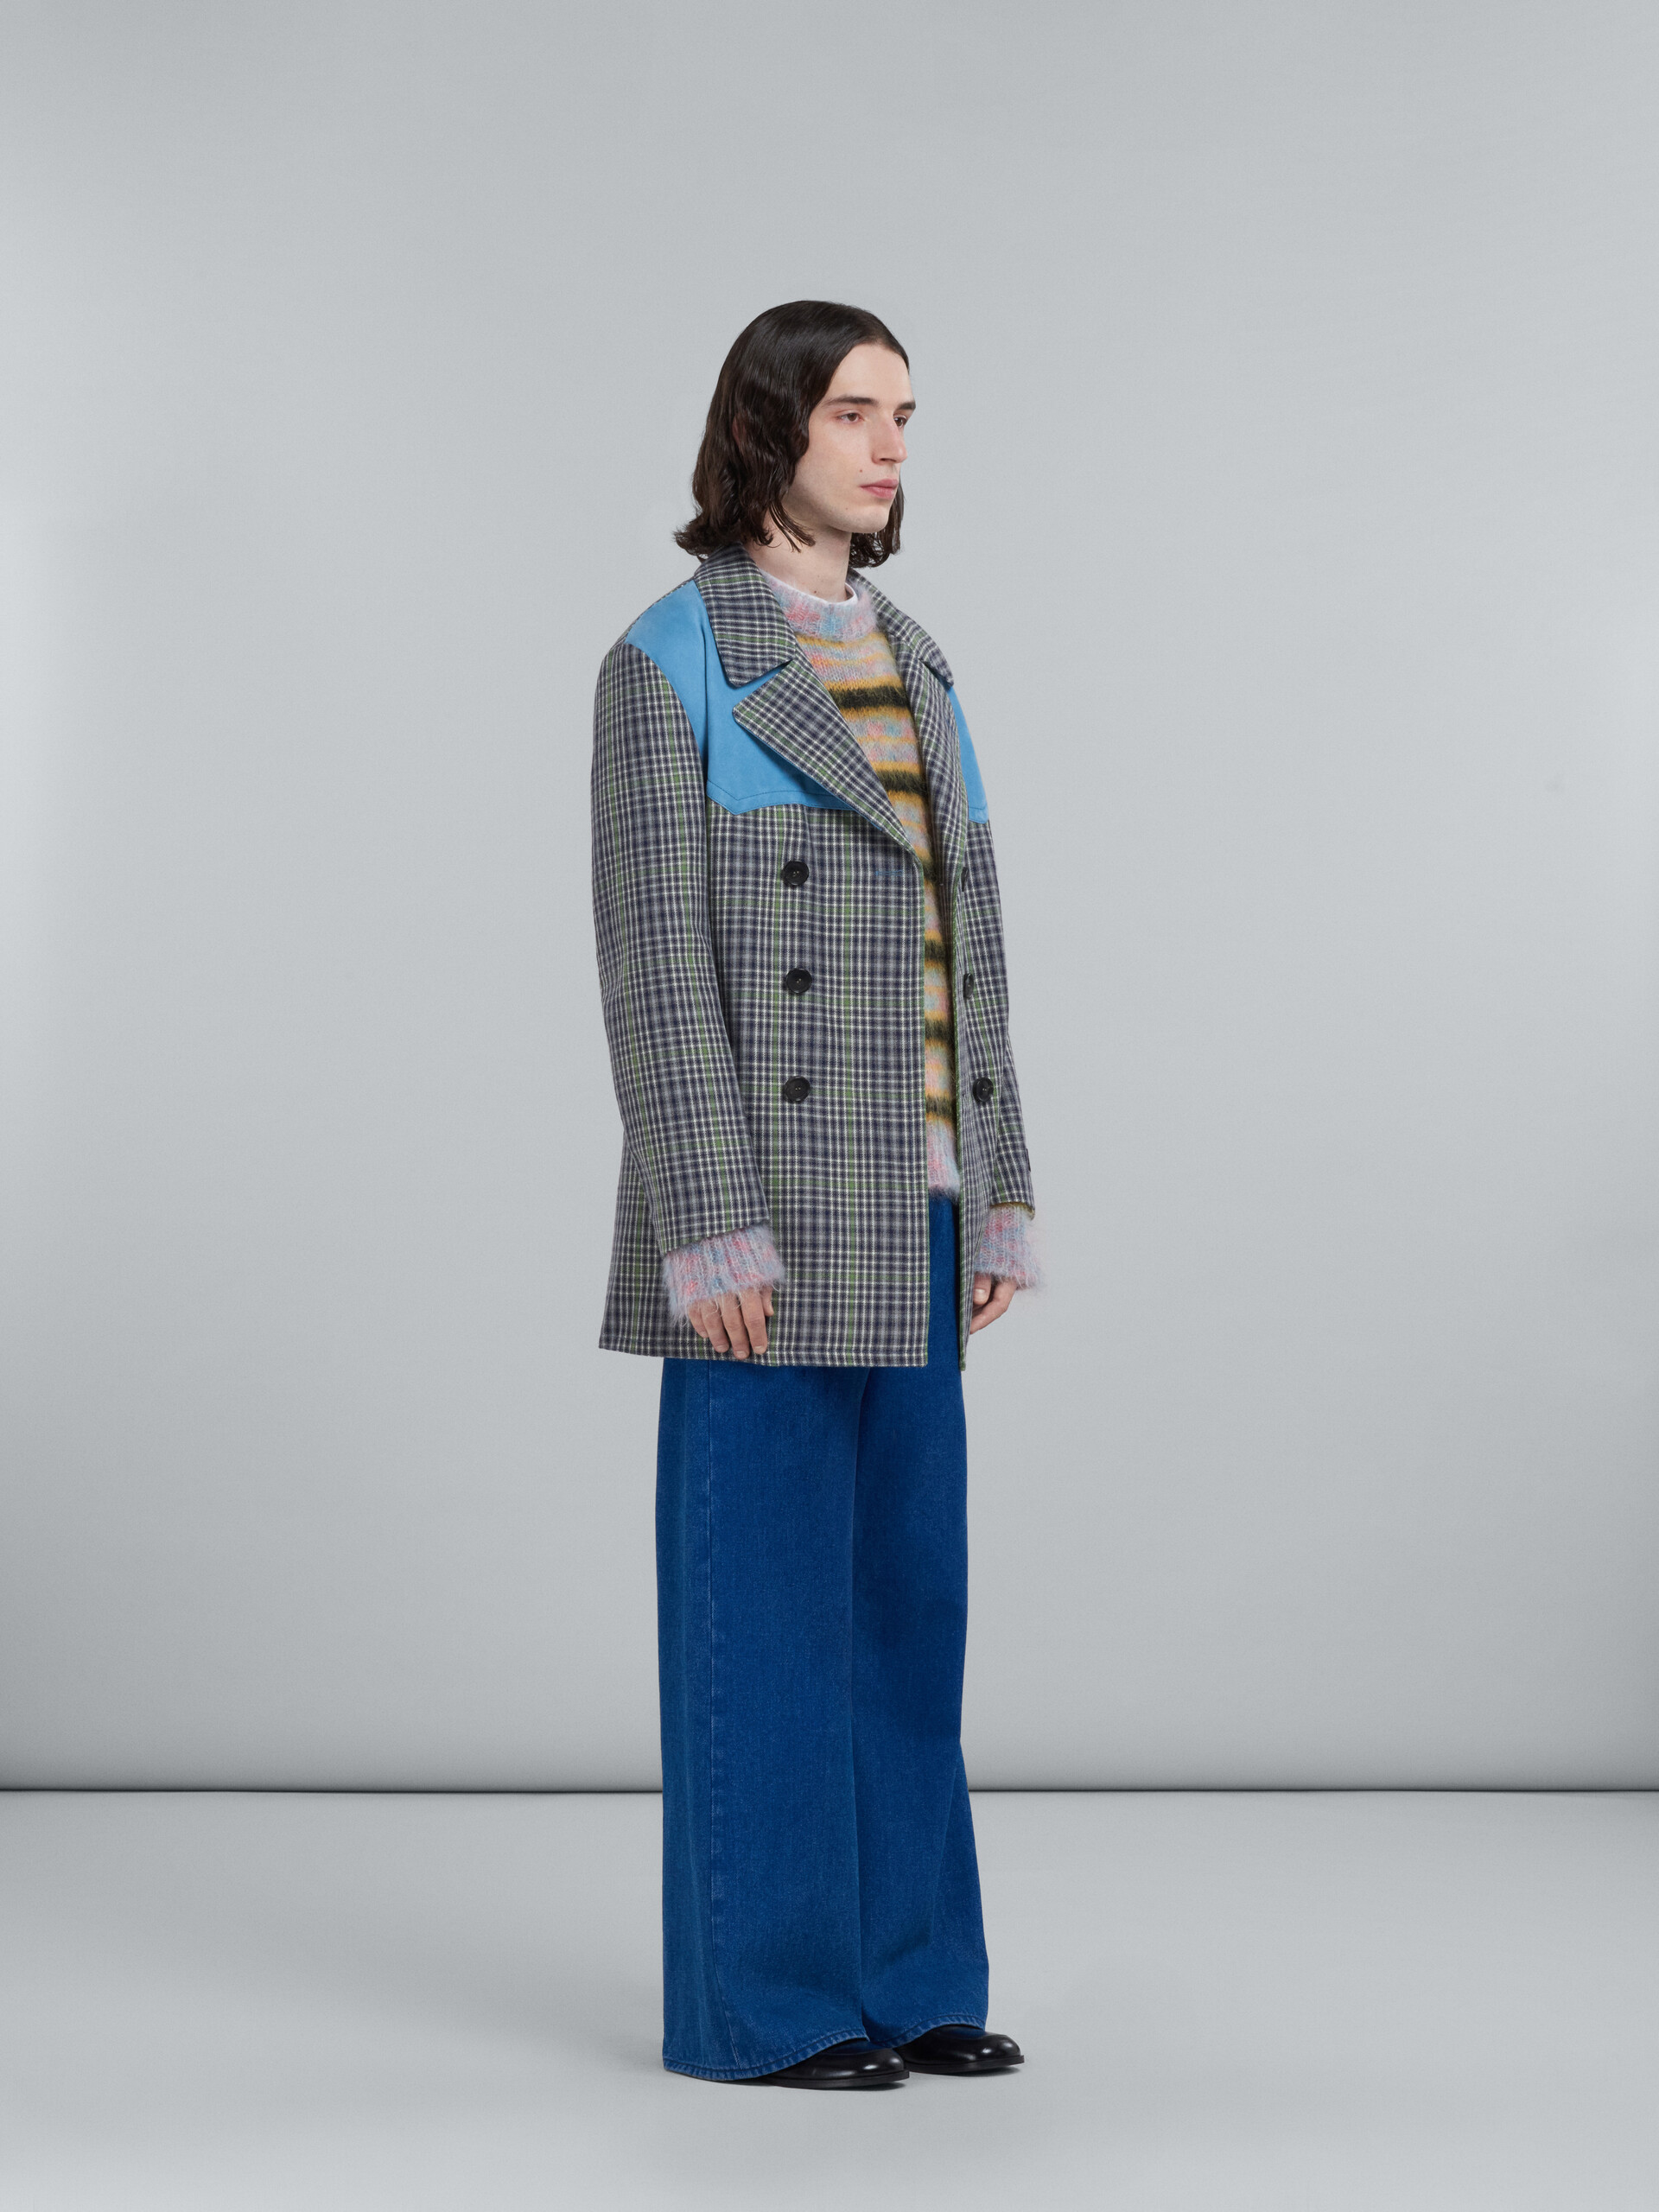 Doppelreihiger Mantel aus grau karierter Wolle - Mäntel - Image 6